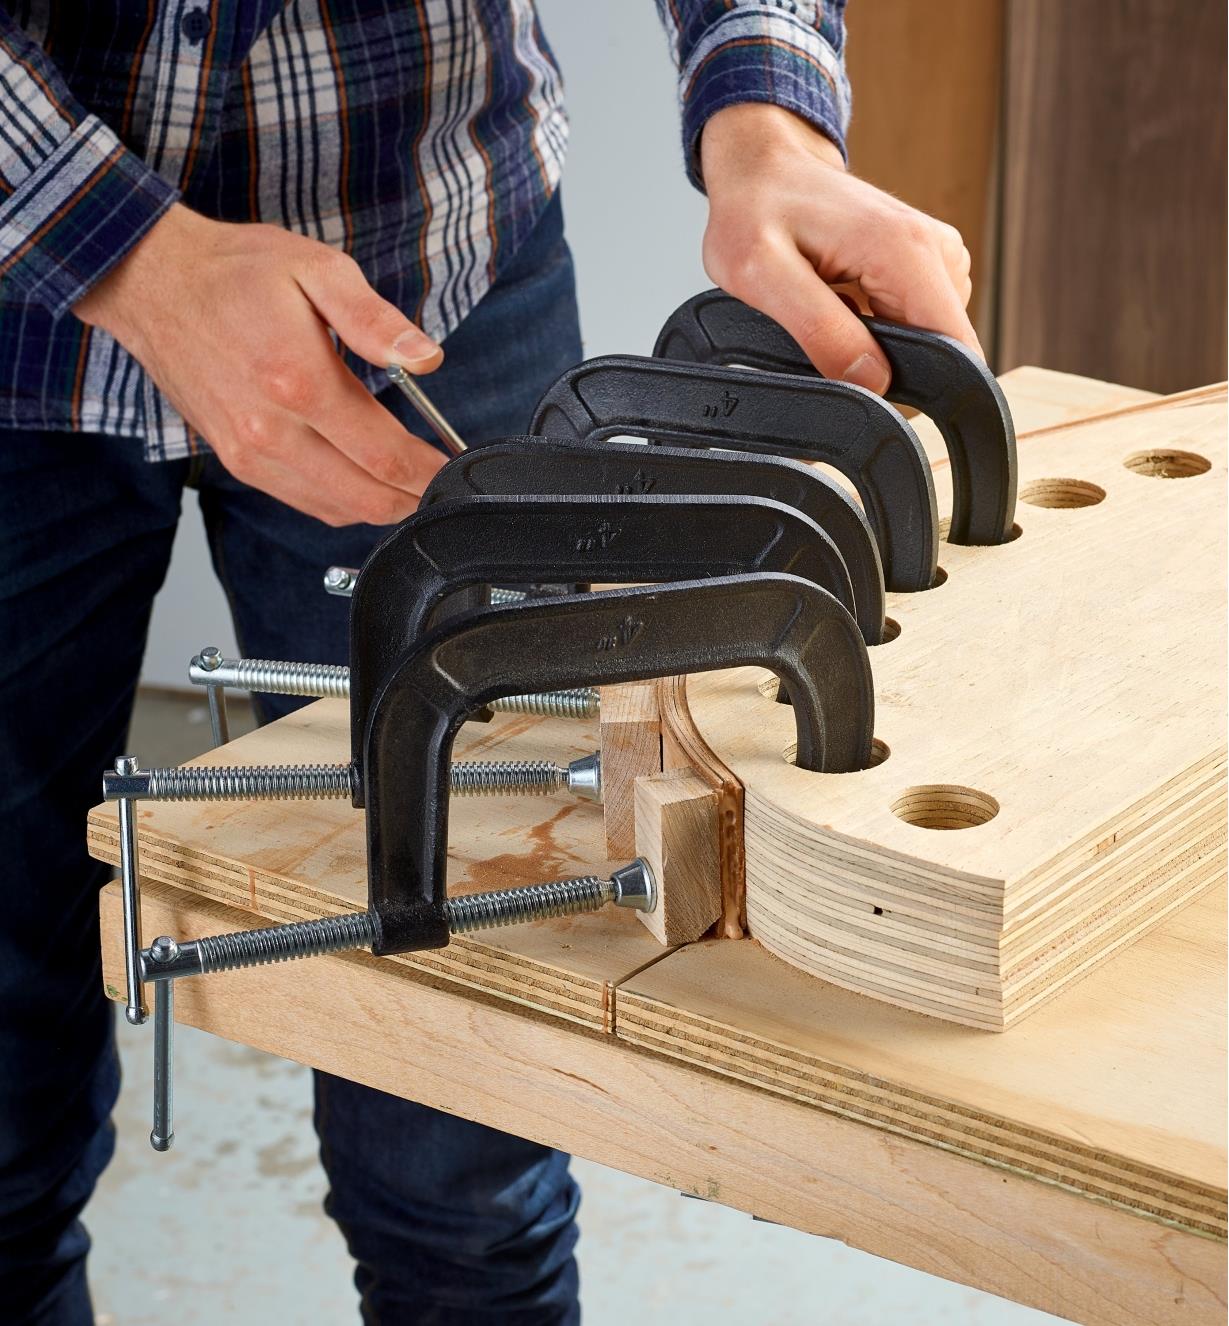 Sử dụng cảo để cố định những chi tiết gỗ đang được gắn keo